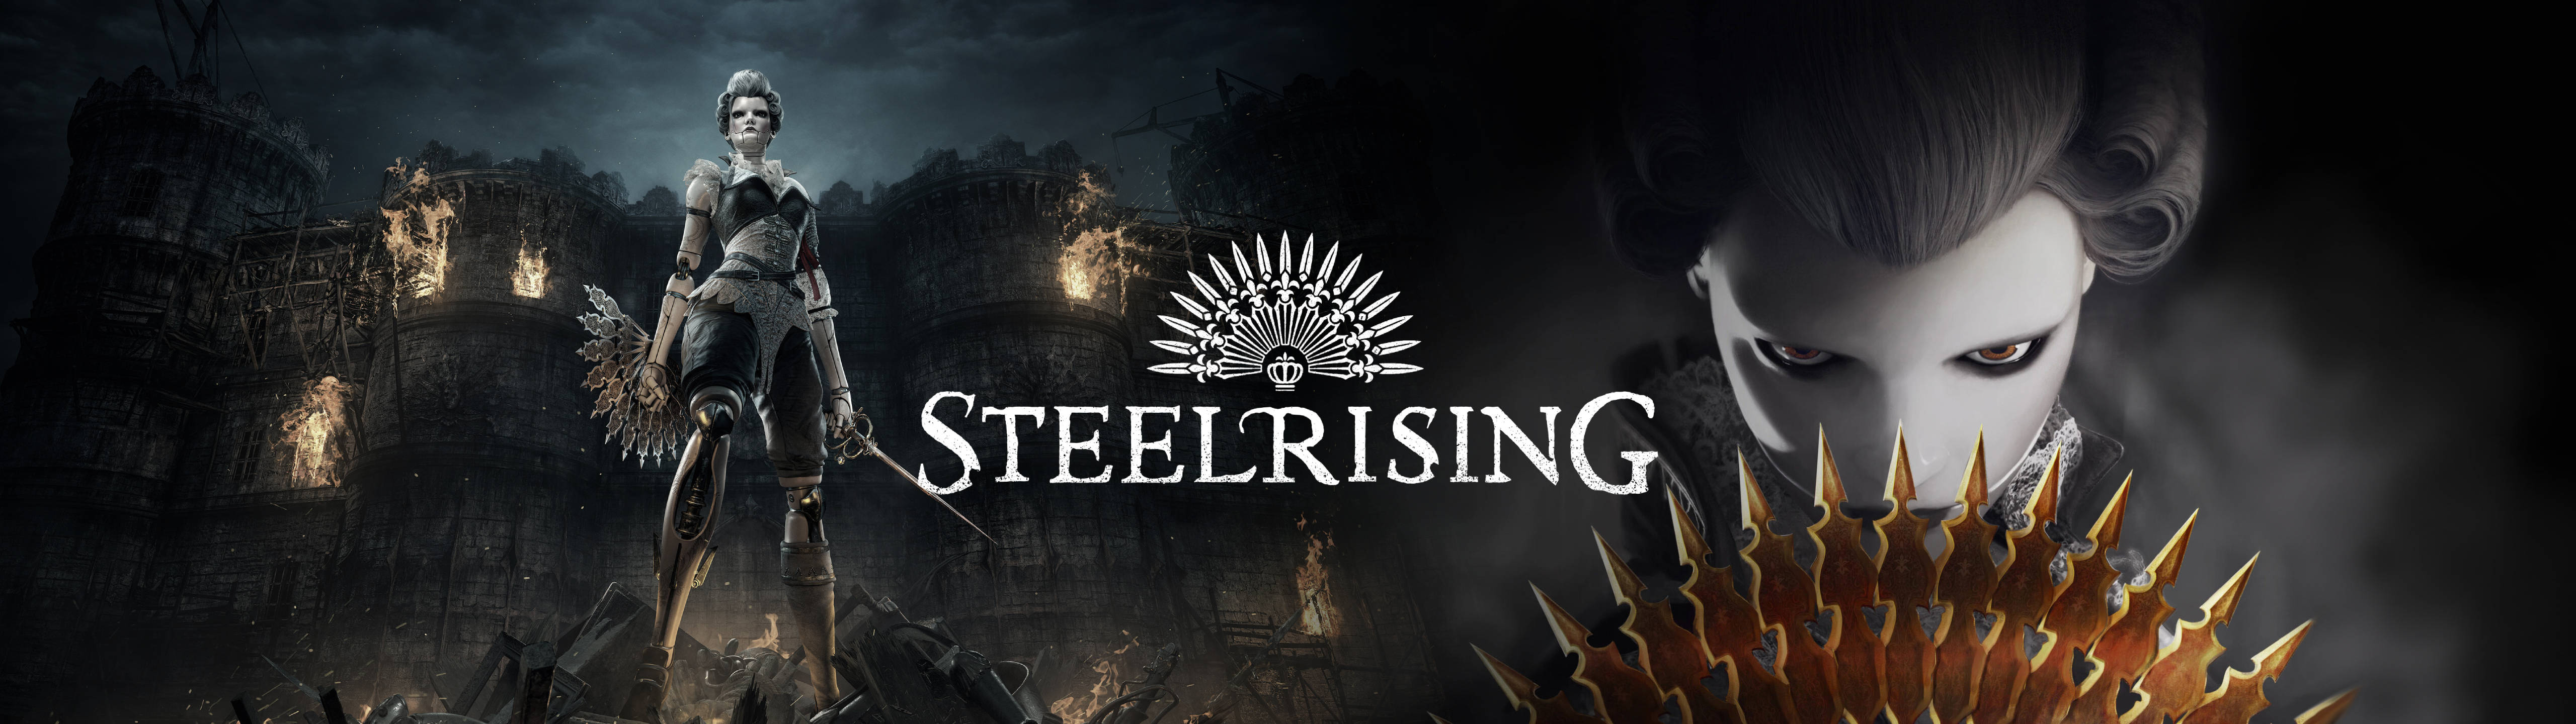 2022 Steelrising 5120x1440 Gaming